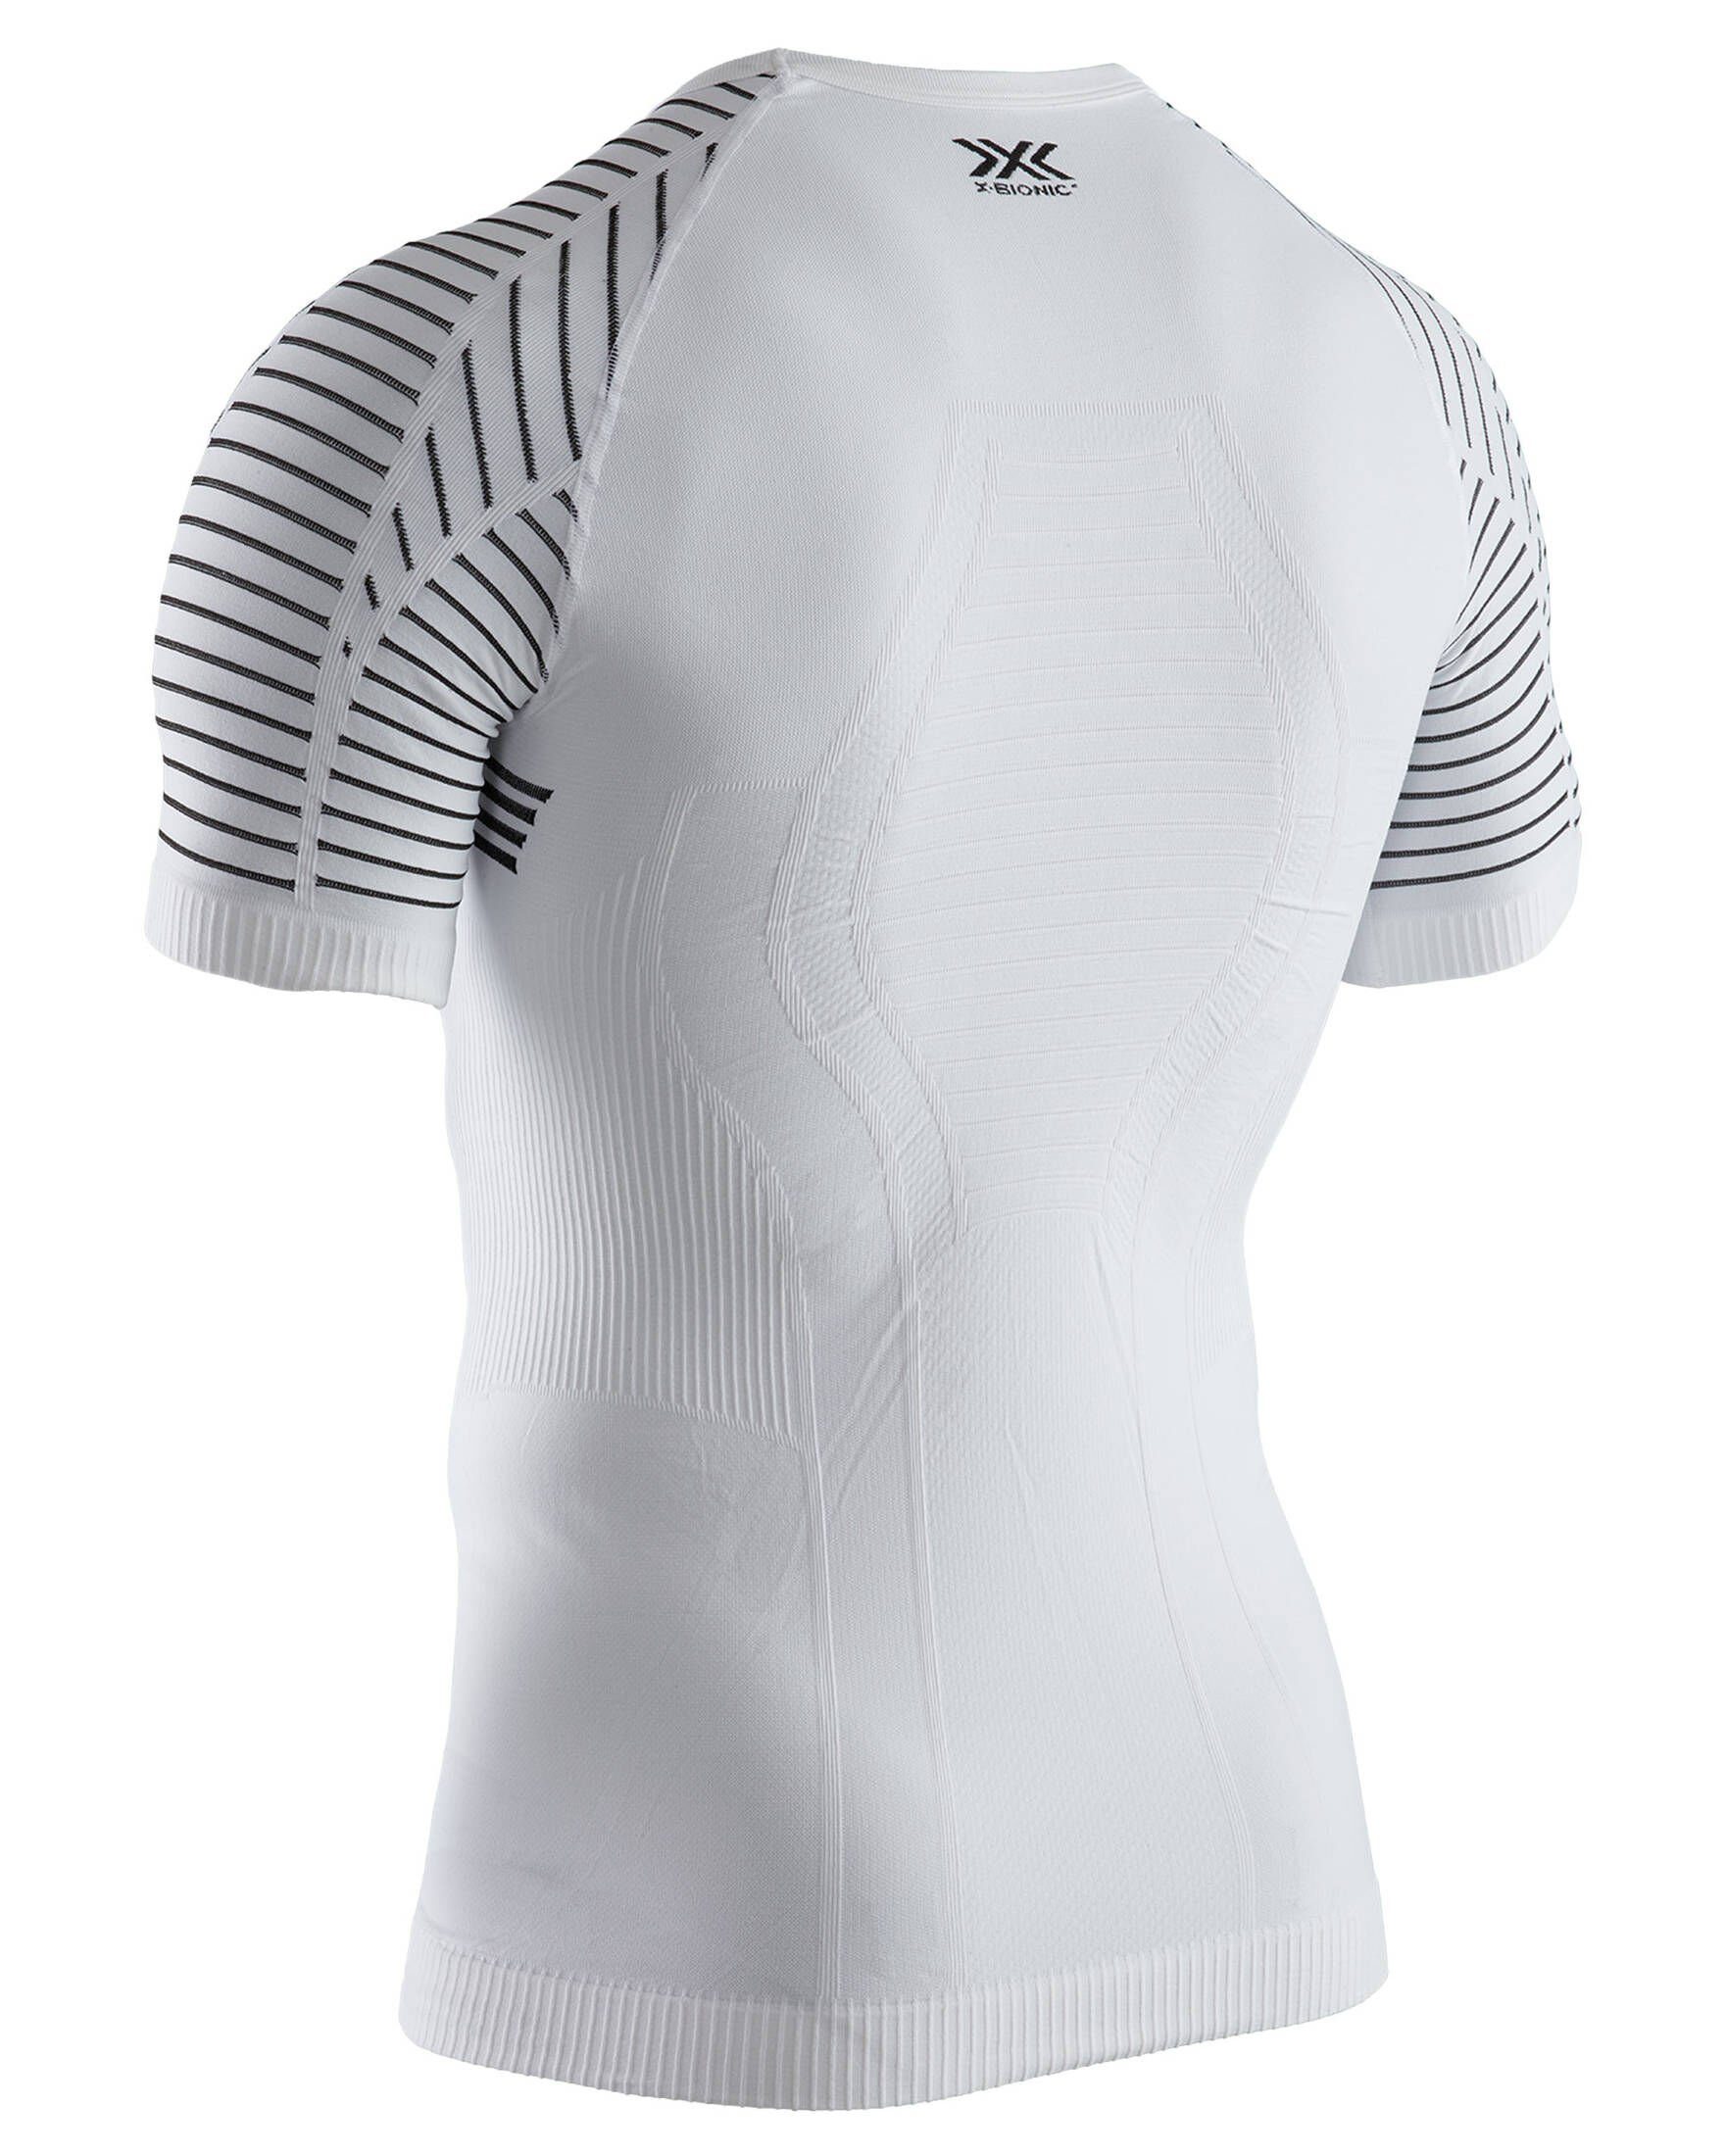 X-Bionic Unterhemd weiß (100)